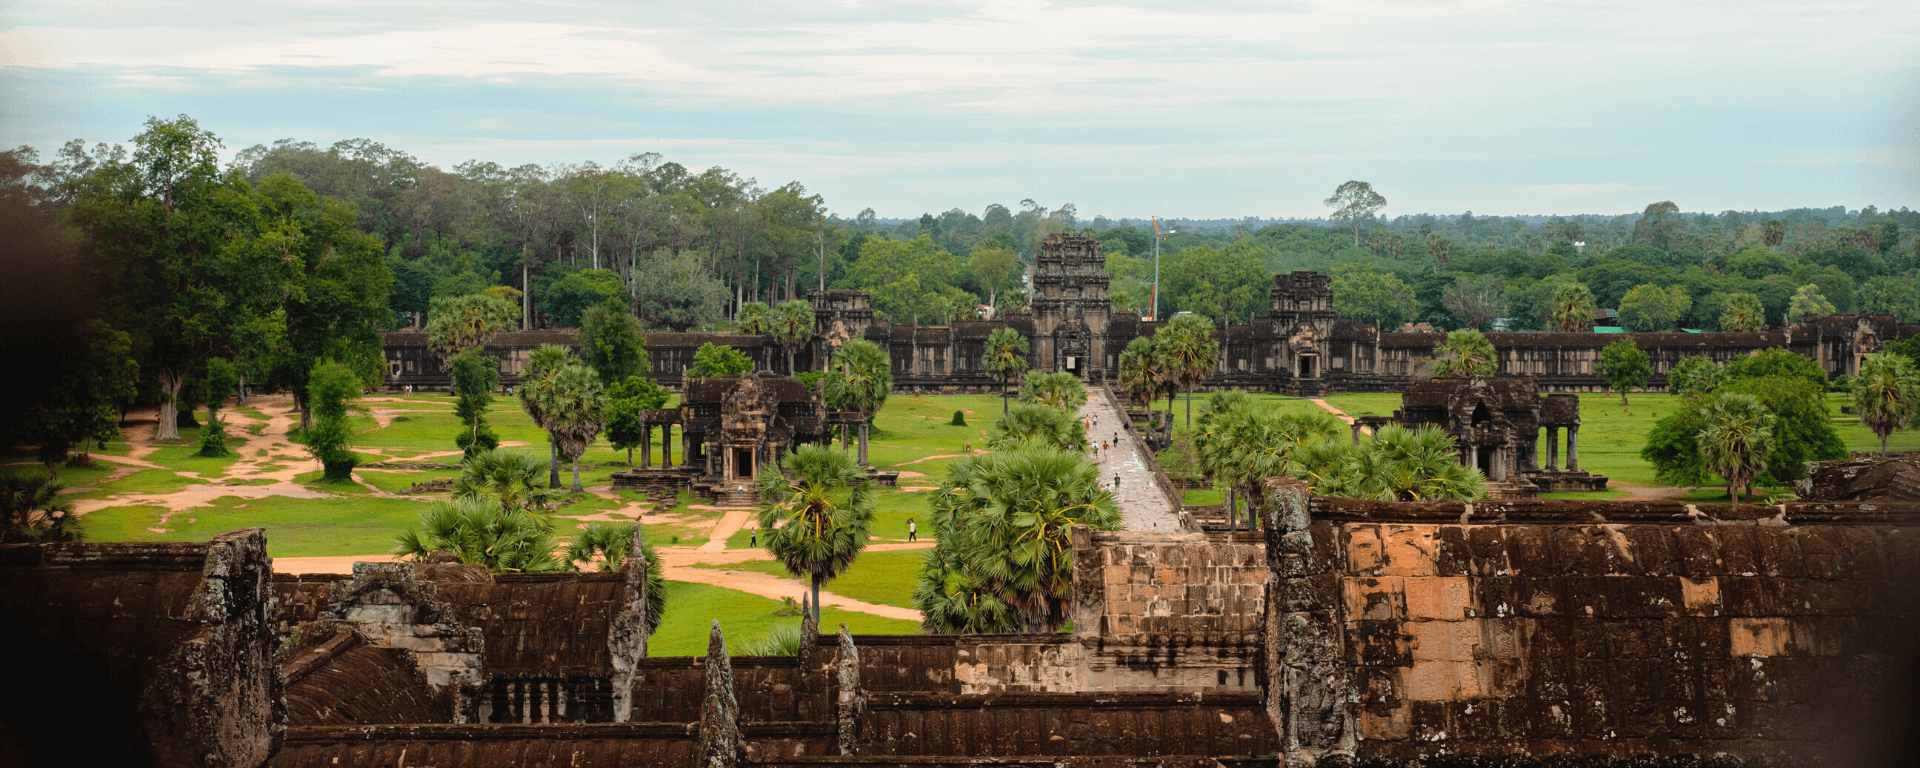 Cambodia Tourist Attractions